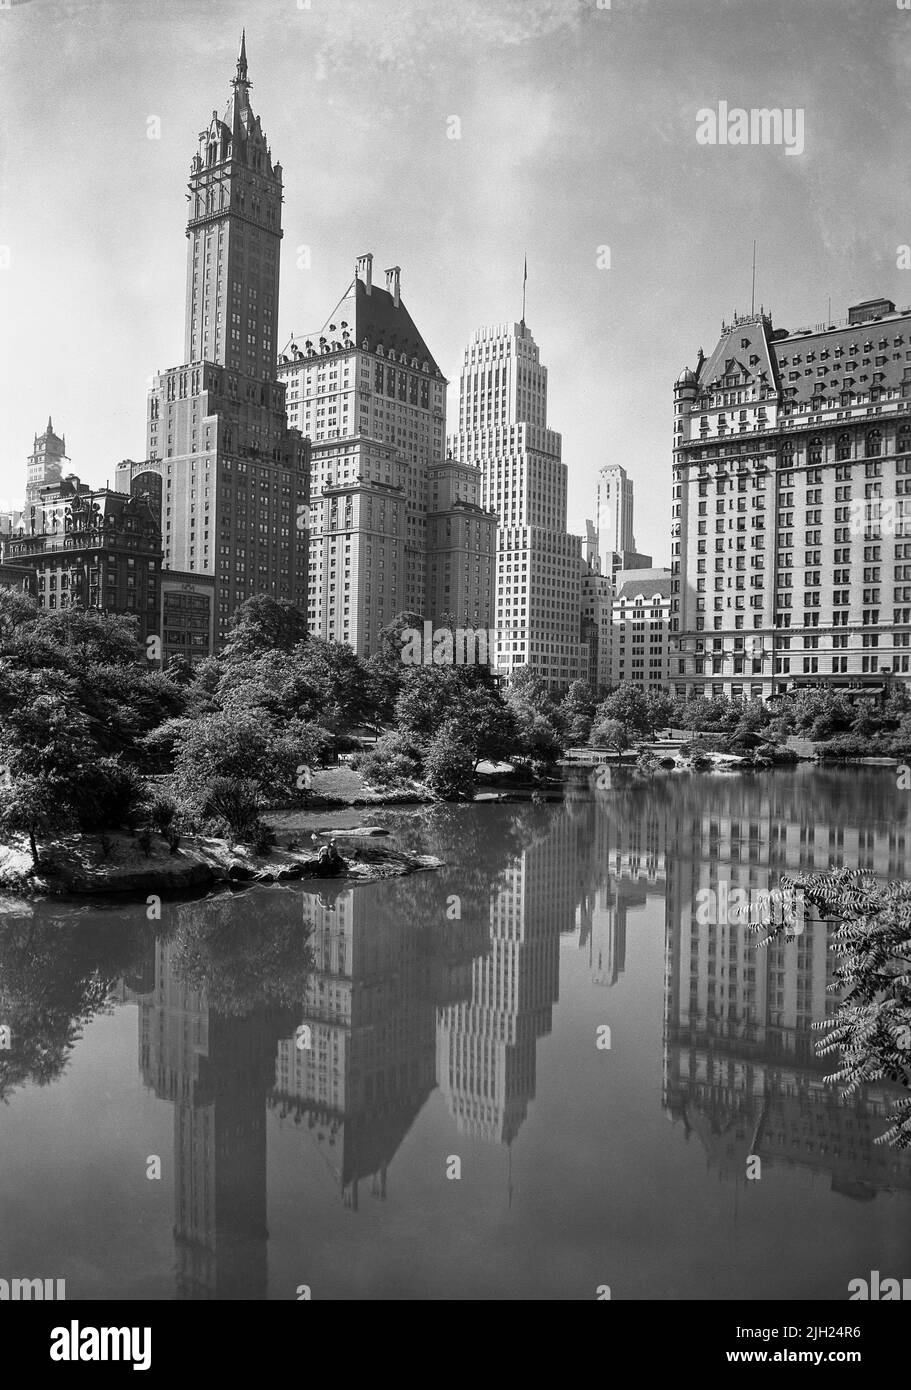 Vue depuis Central Park, Sherry-Netherland Hotel (à gauche), Plaza Hotel (à droite) avec réflexions dans Lake, New York City, New York, Etats-Unis, Gottcho-Schleisner Collection, 1933 Banque D'Images